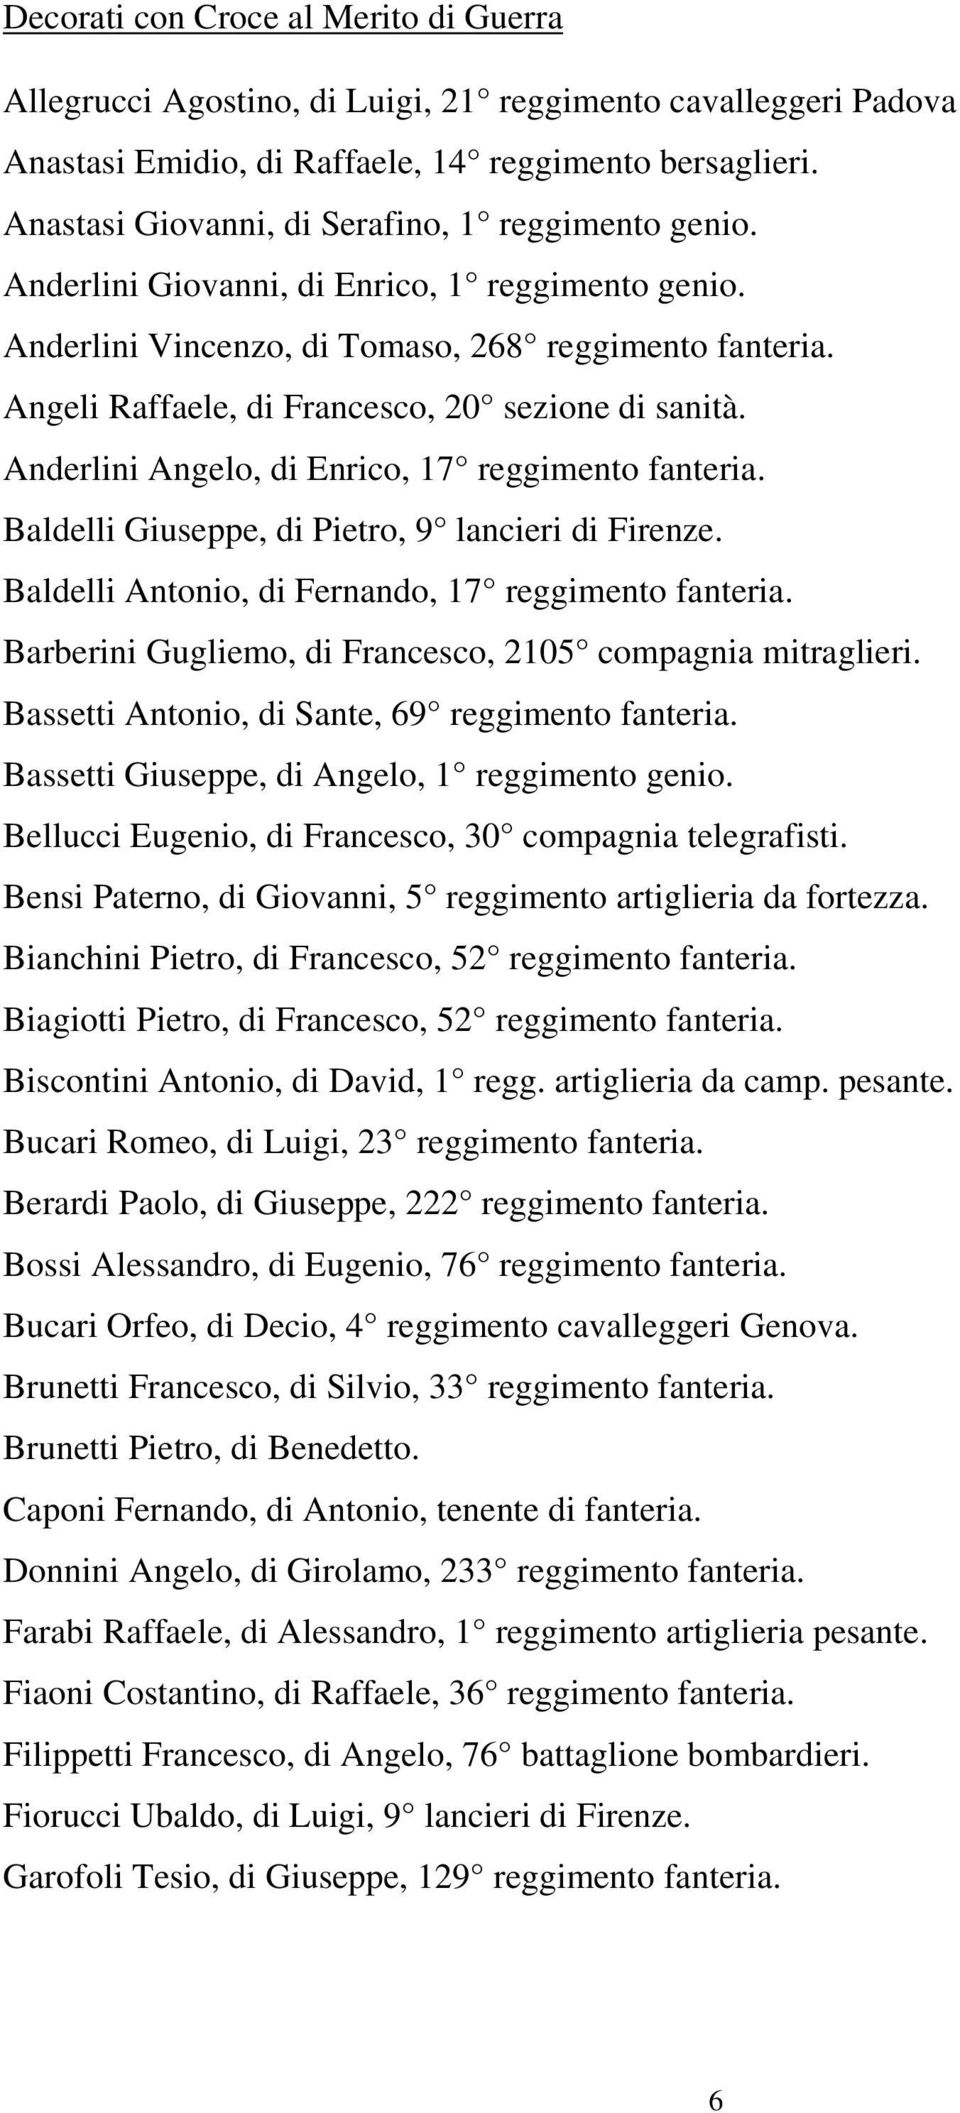 Angeli Raffaele, di Francesco, 20 sezione di sanità. Anderlini Angelo, di Enrico, 17 reggimento fanteria. Baldelli Giuseppe, di Pietro, 9 lancieri di Firenze.